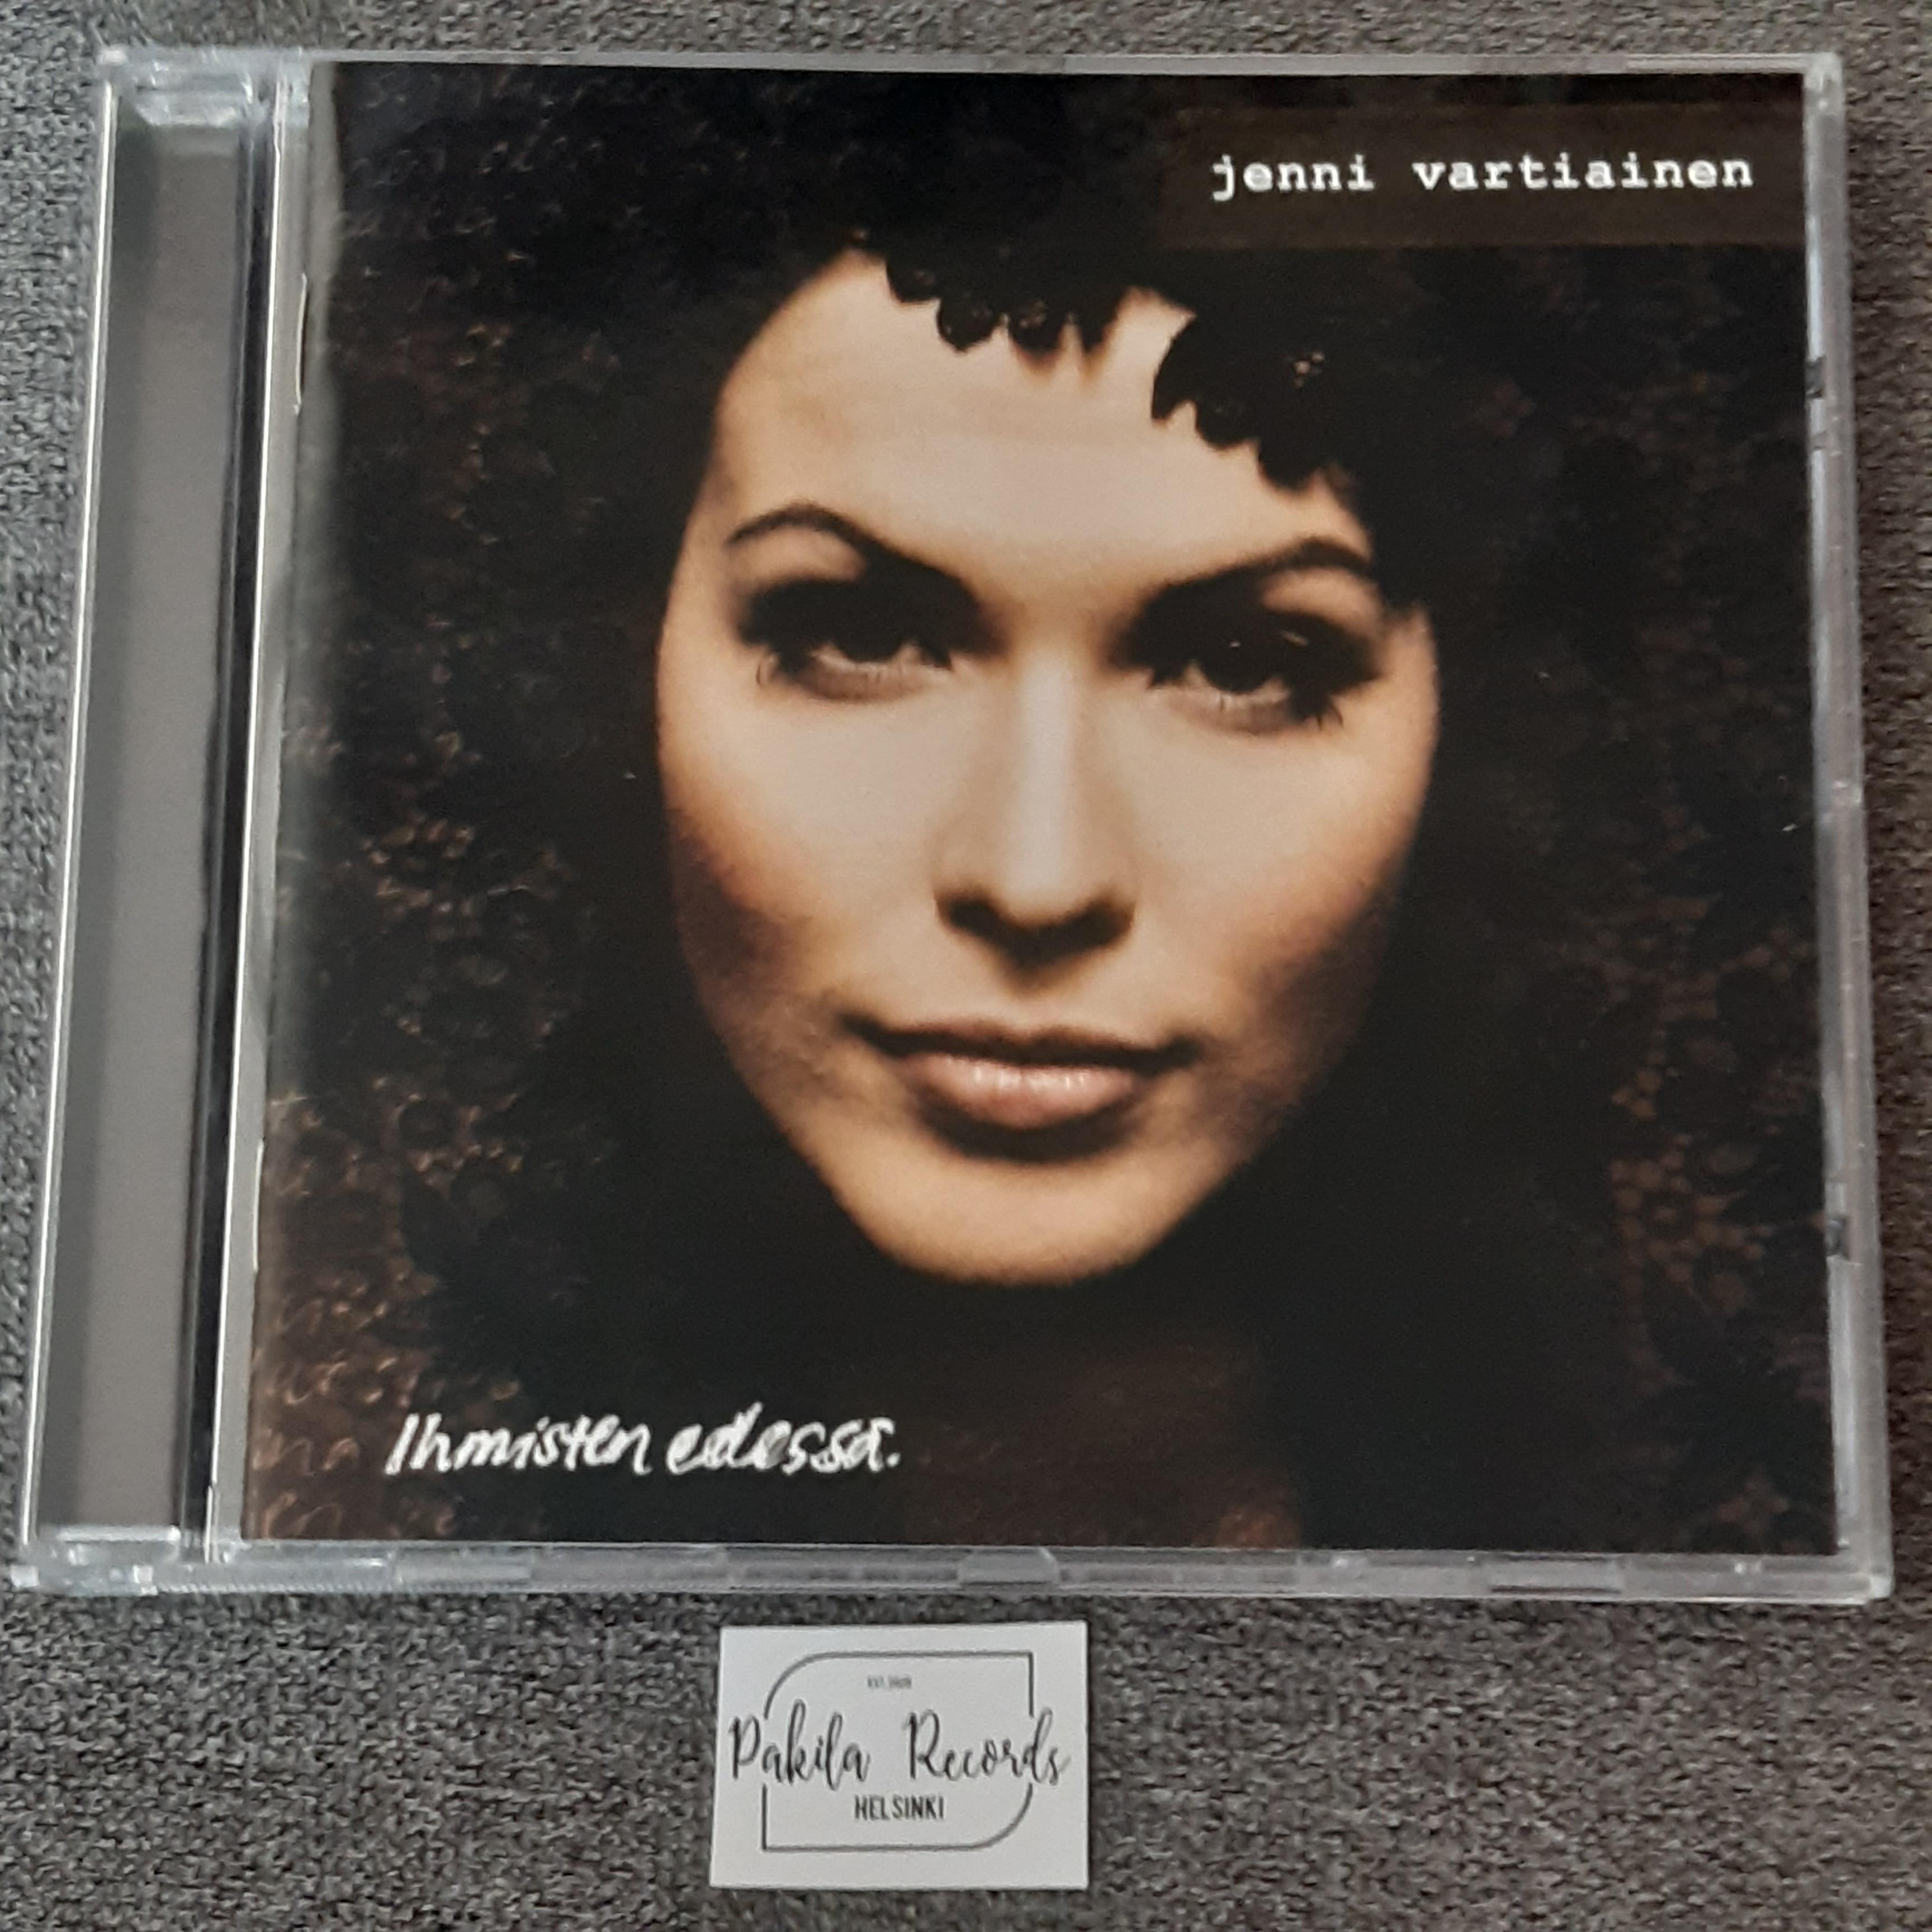 Jenni Vartiainen - Ihmisten edessä - CD (käytetty)